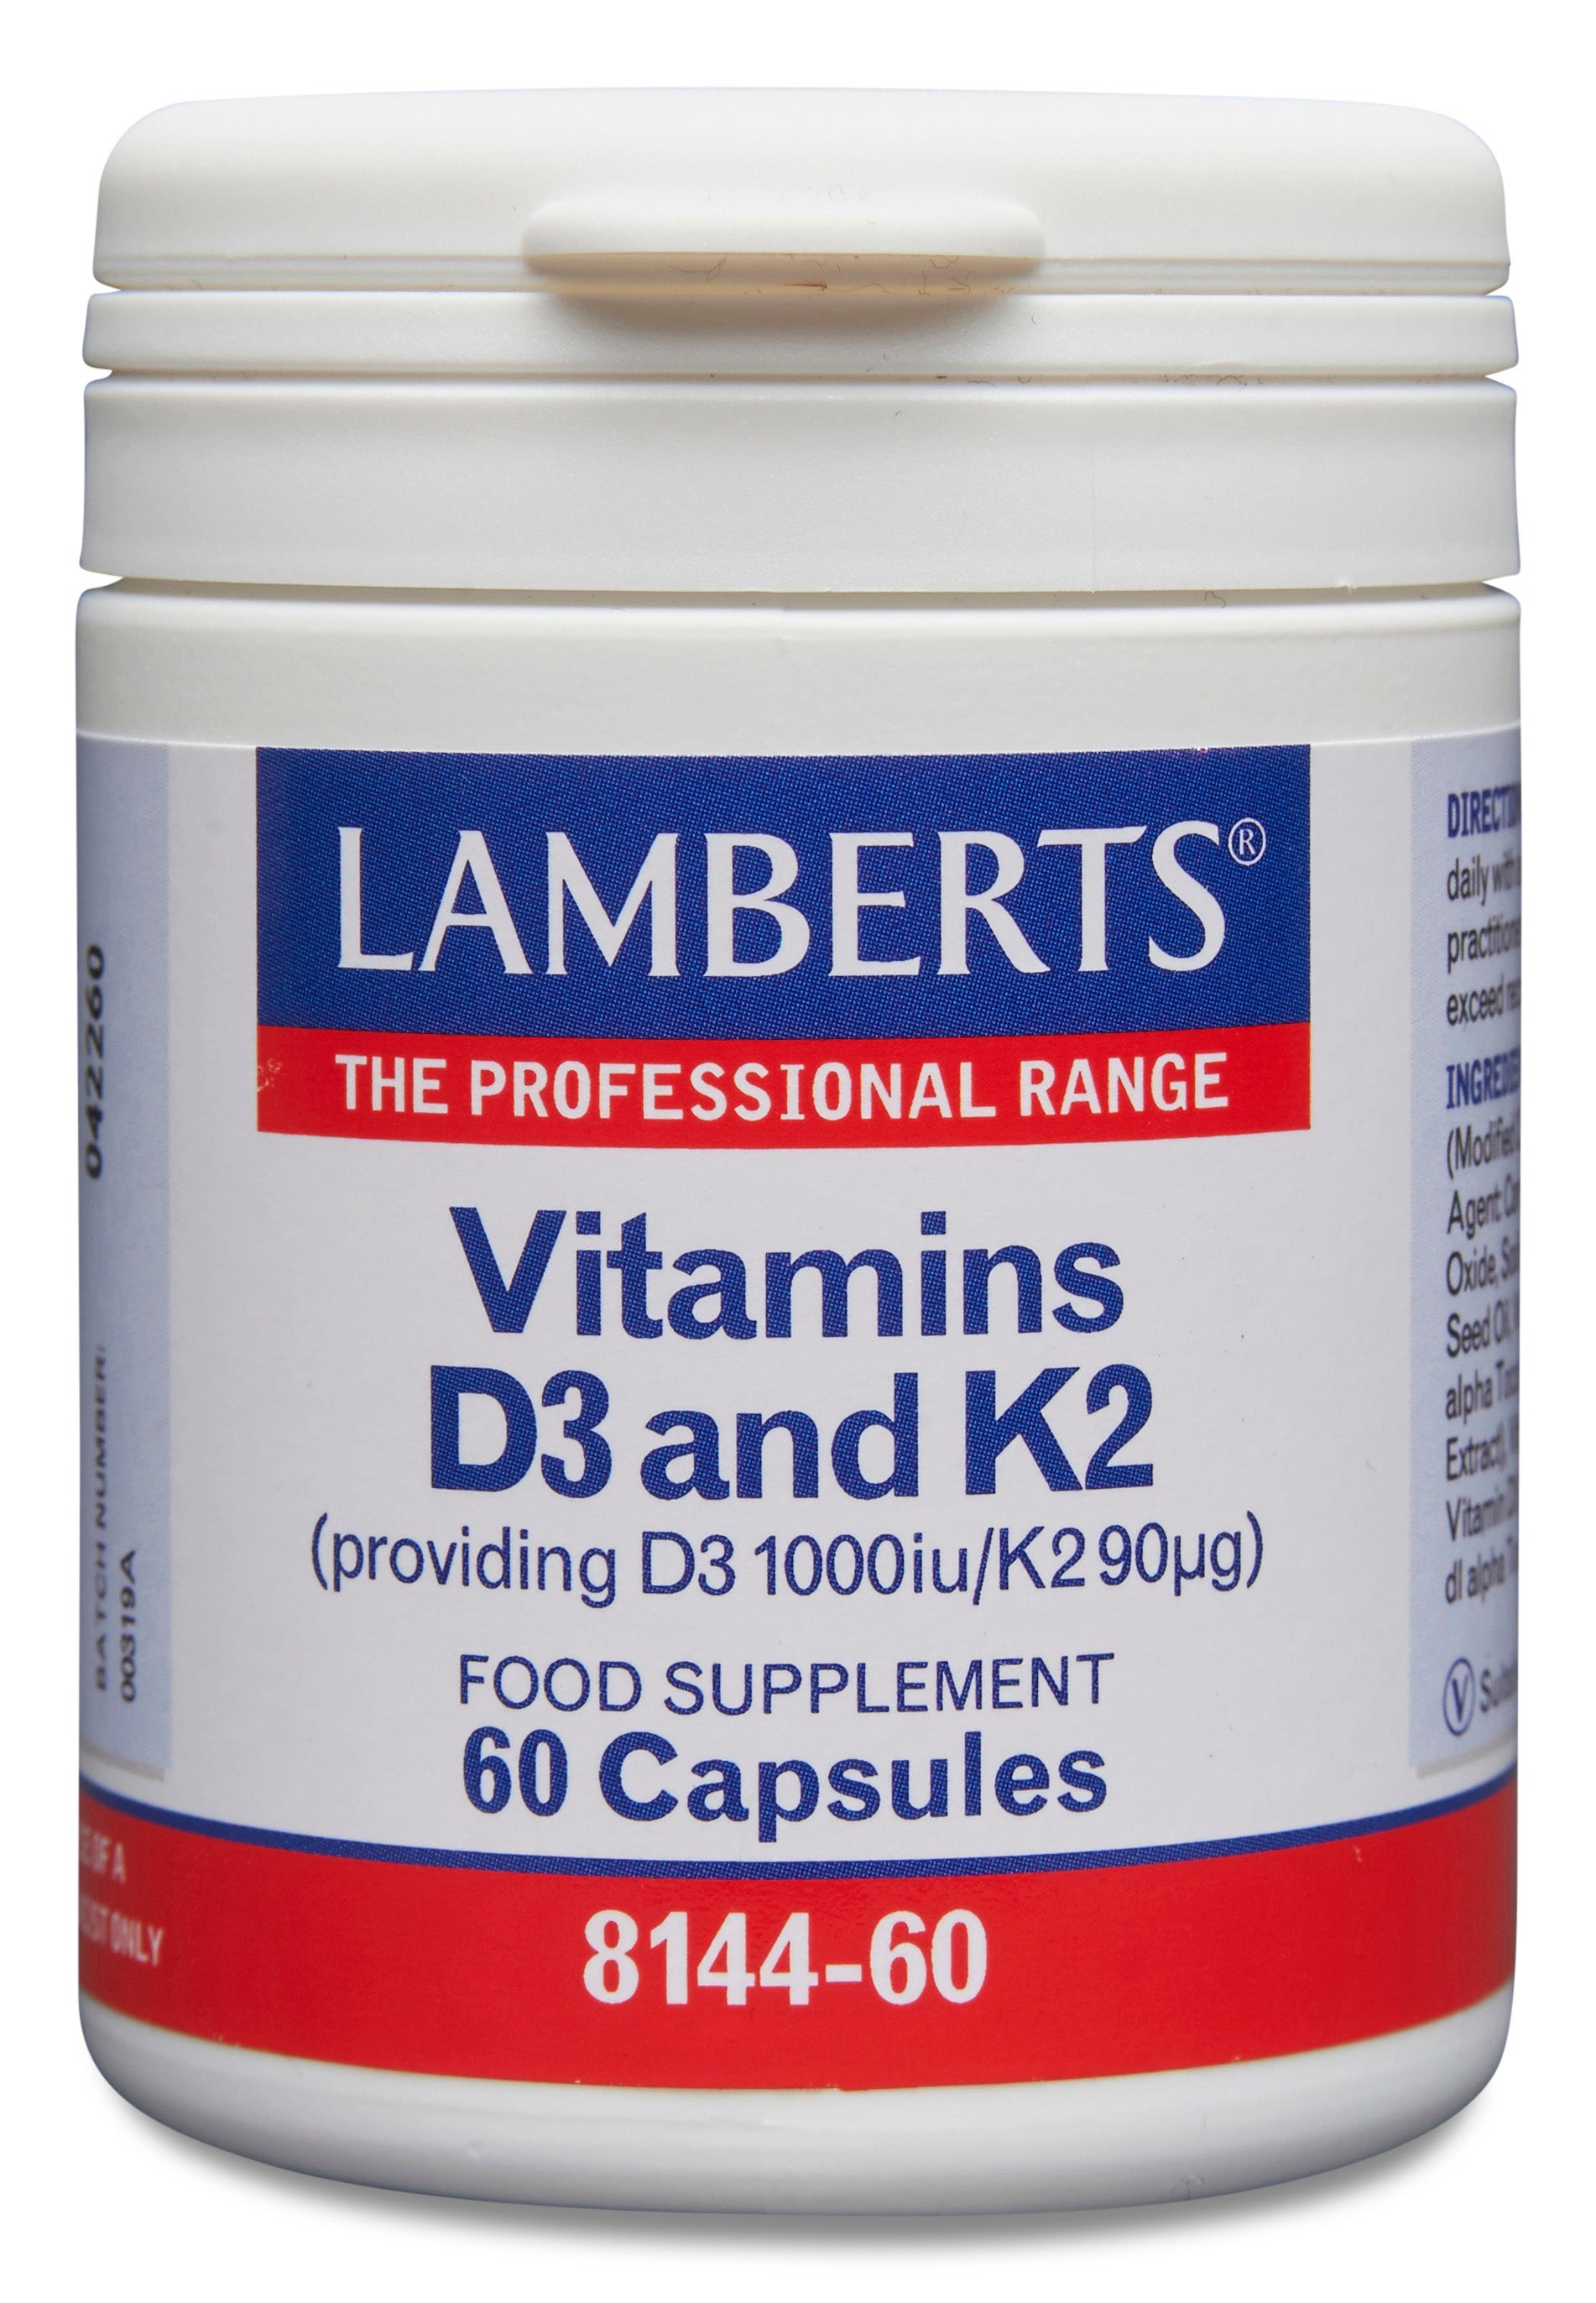 lamberts - 60 Capsules Vitamins D3 and K2